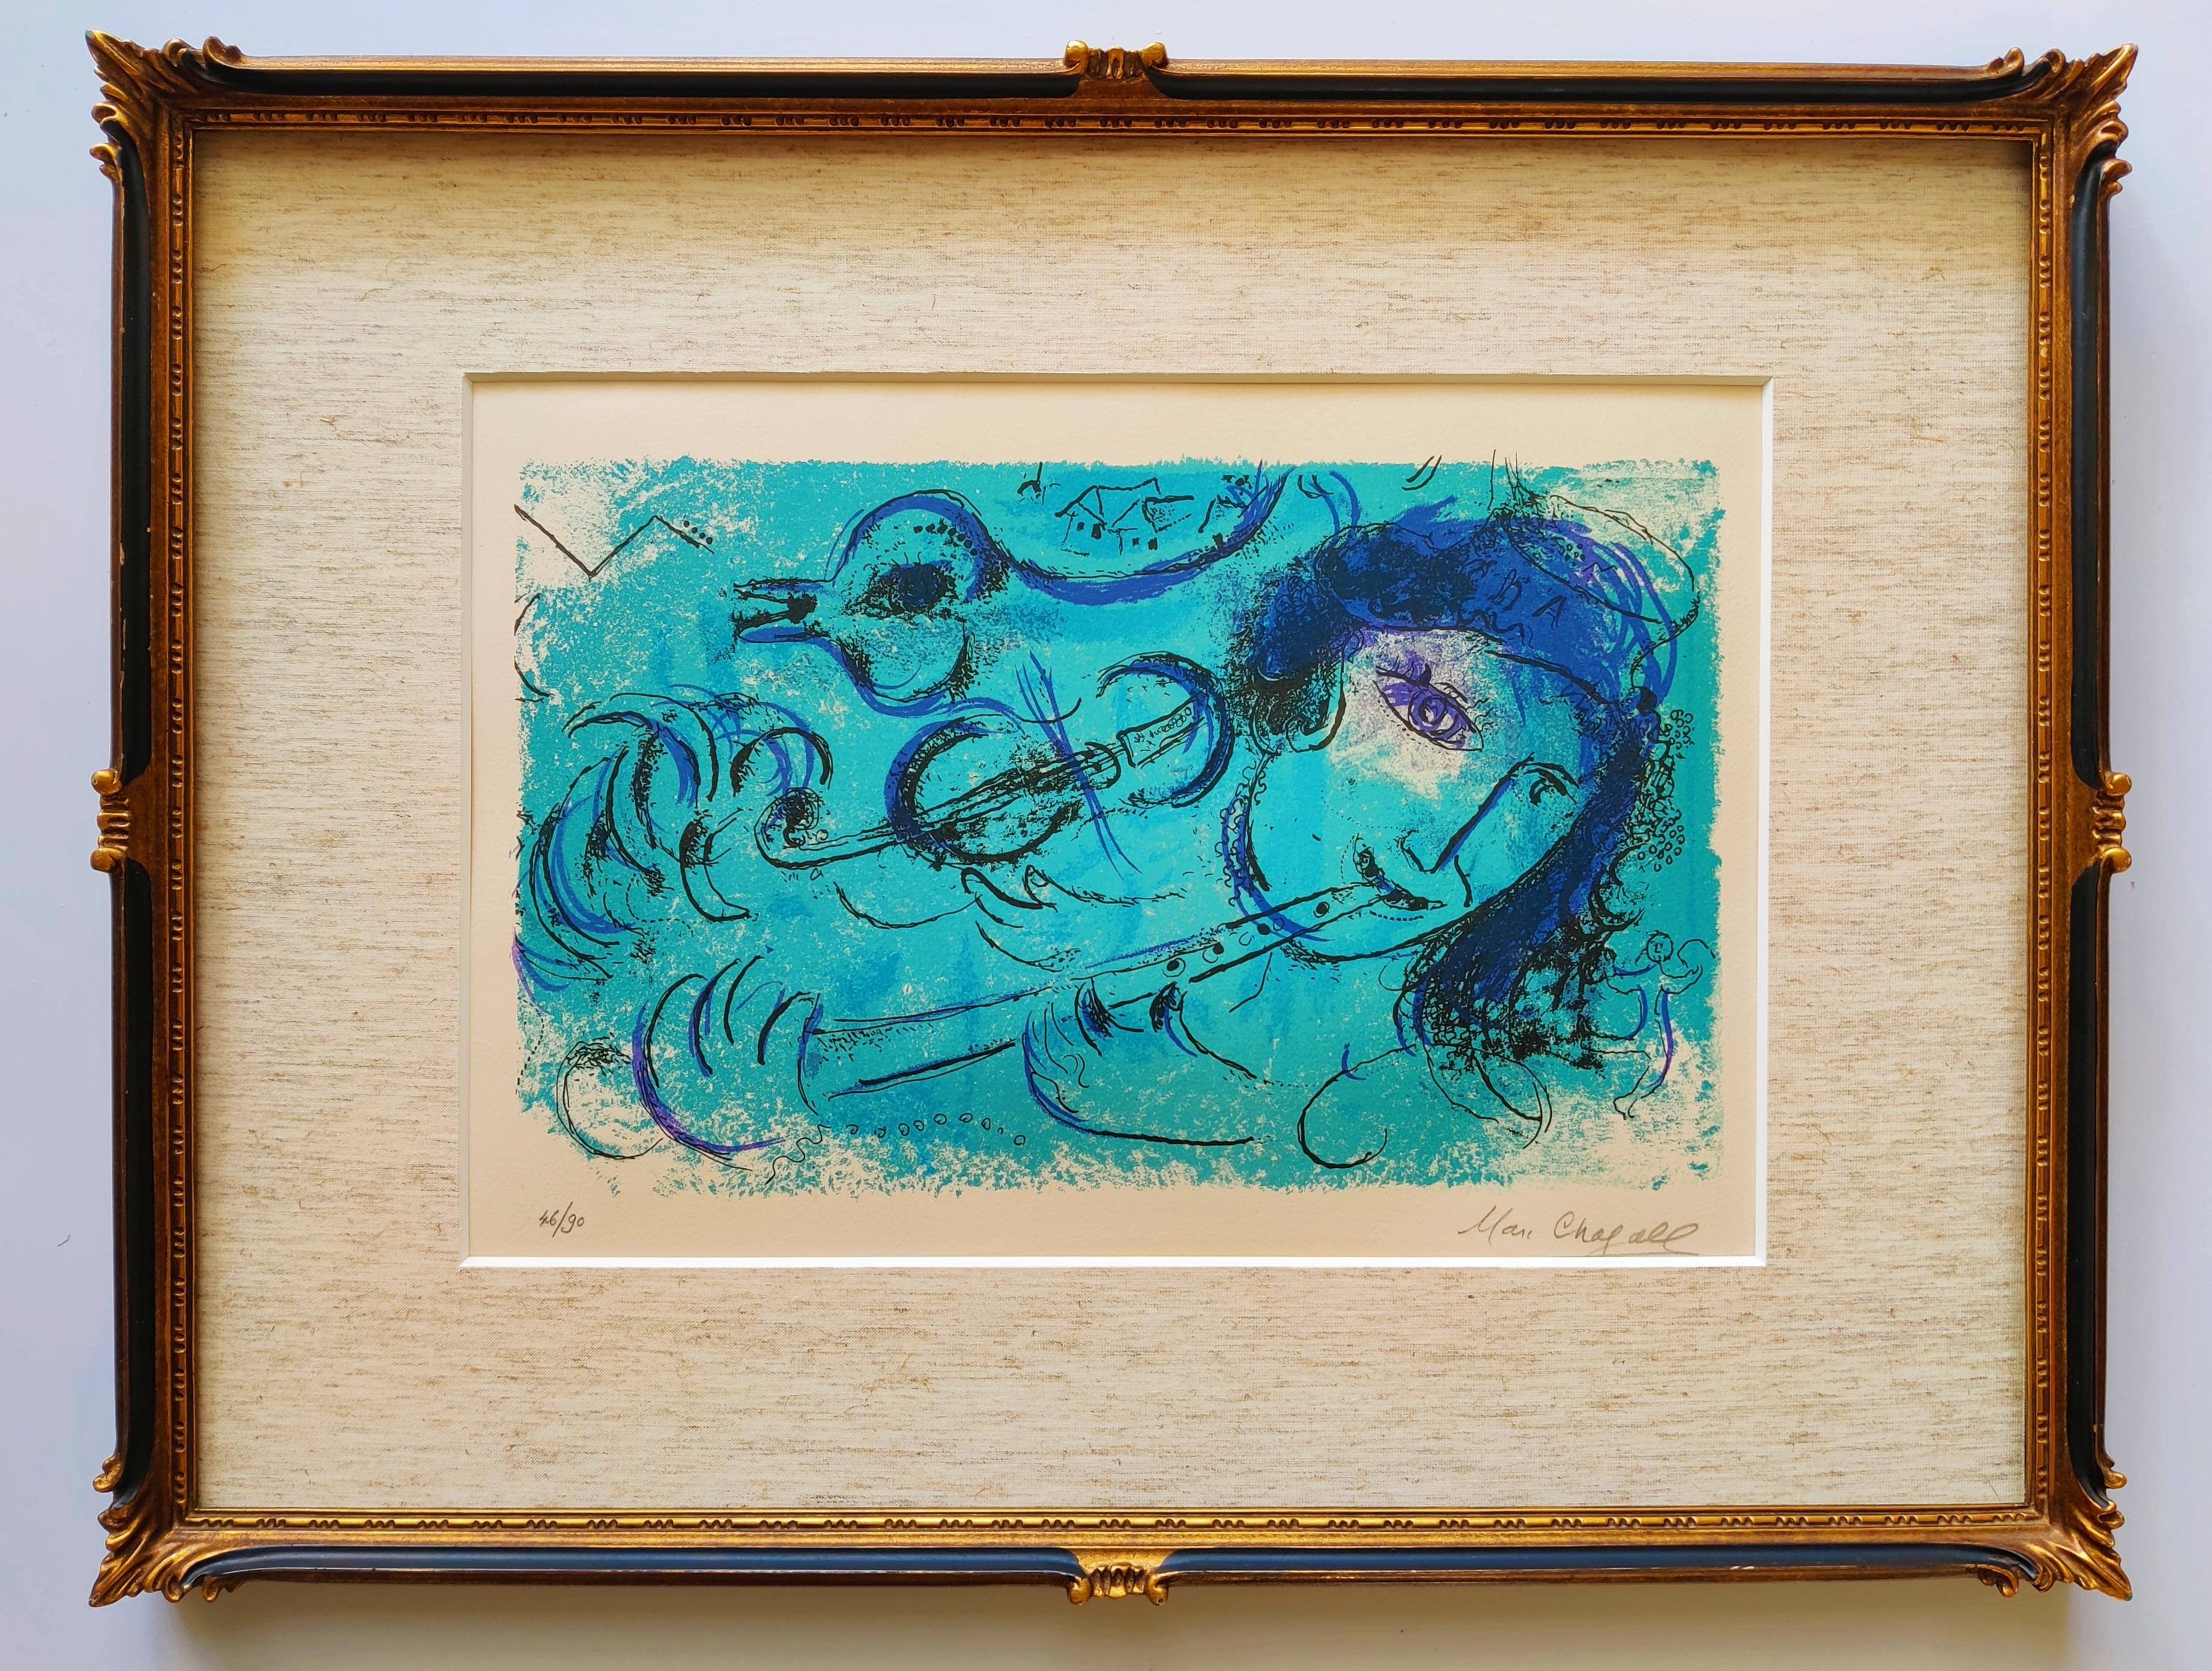 Marc Chagall
Le joueur de flûte (A&M)
Lithographie imprimée en couleurs, 1957
Signé au crayon en bas à droite 
Numéroté 46/90
Publié par Maeght, Paris
encadré
image : 250 x 430 mm 
feuille : 380 x 560 mm 
excellente impression
